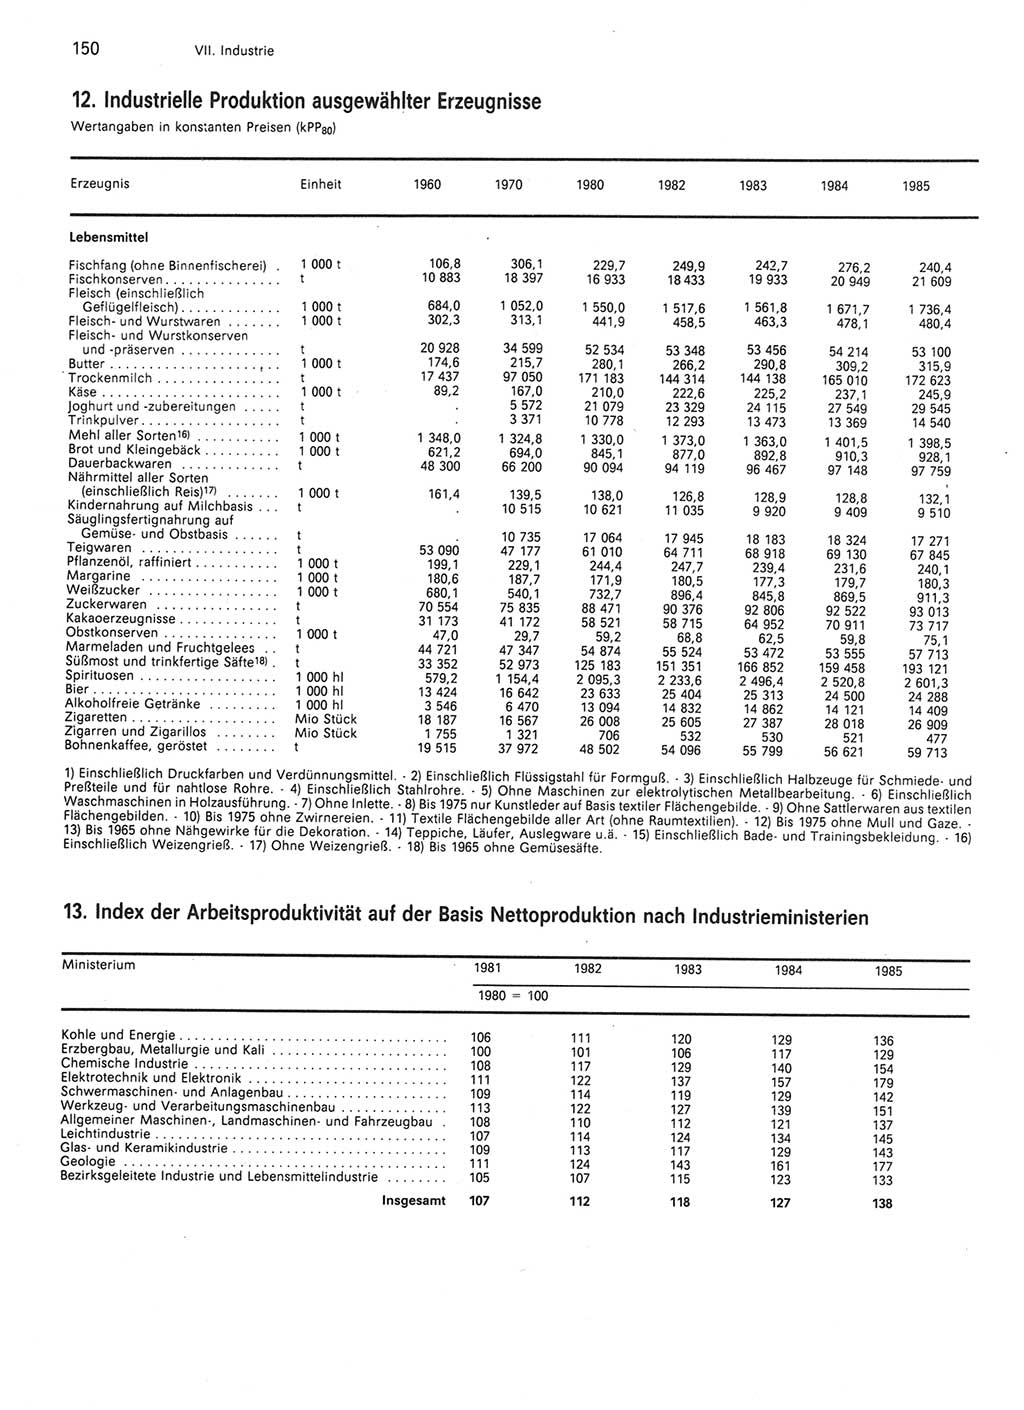 Statistisches Jahrbuch der Deutschen Demokratischen Republik (DDR) 1986, Seite 150 (Stat. Jb. DDR 1986, S. 150)